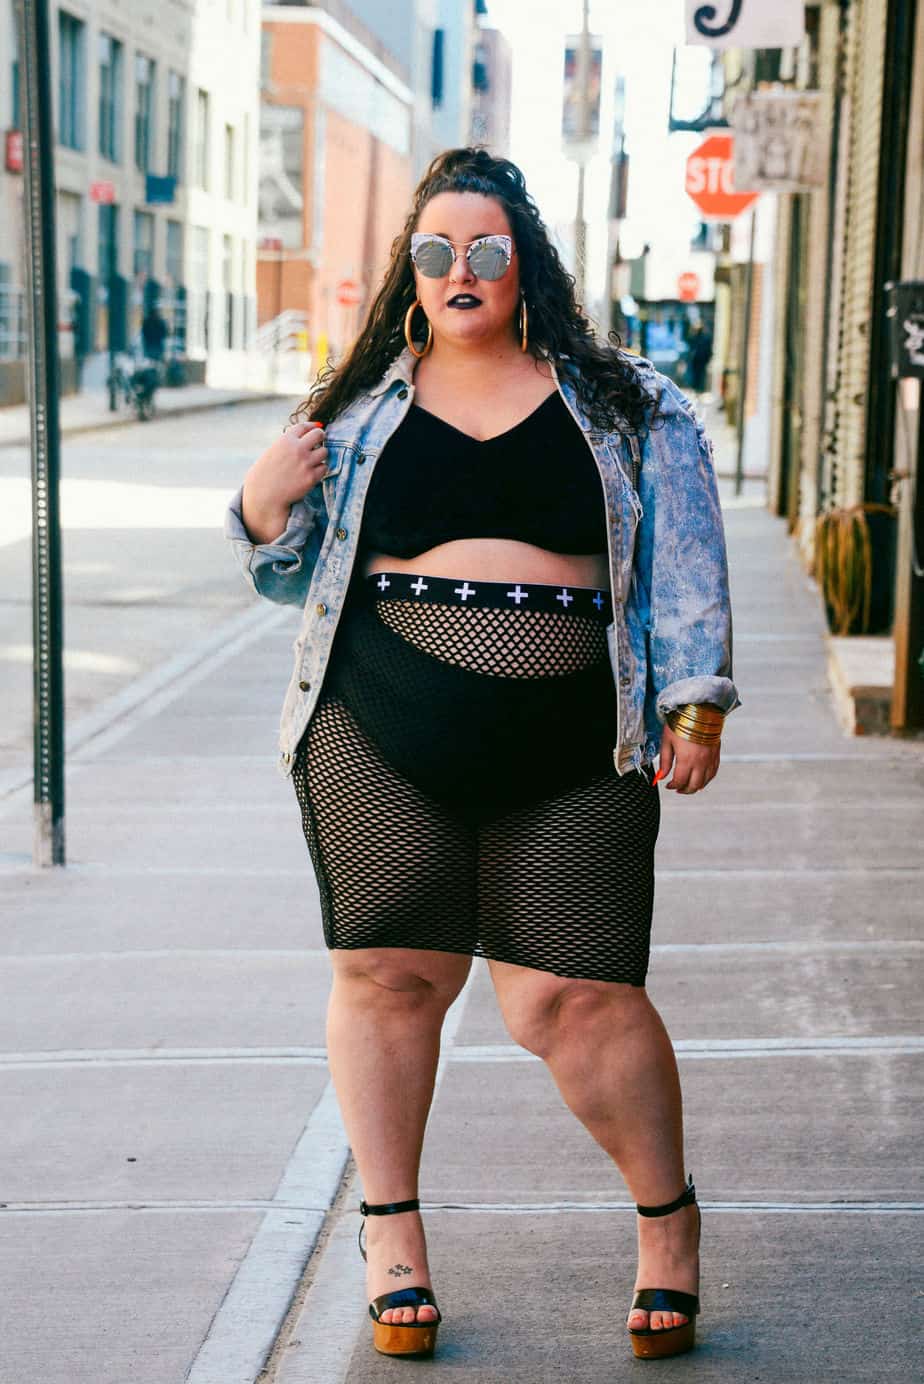 Fat Chick Fashion